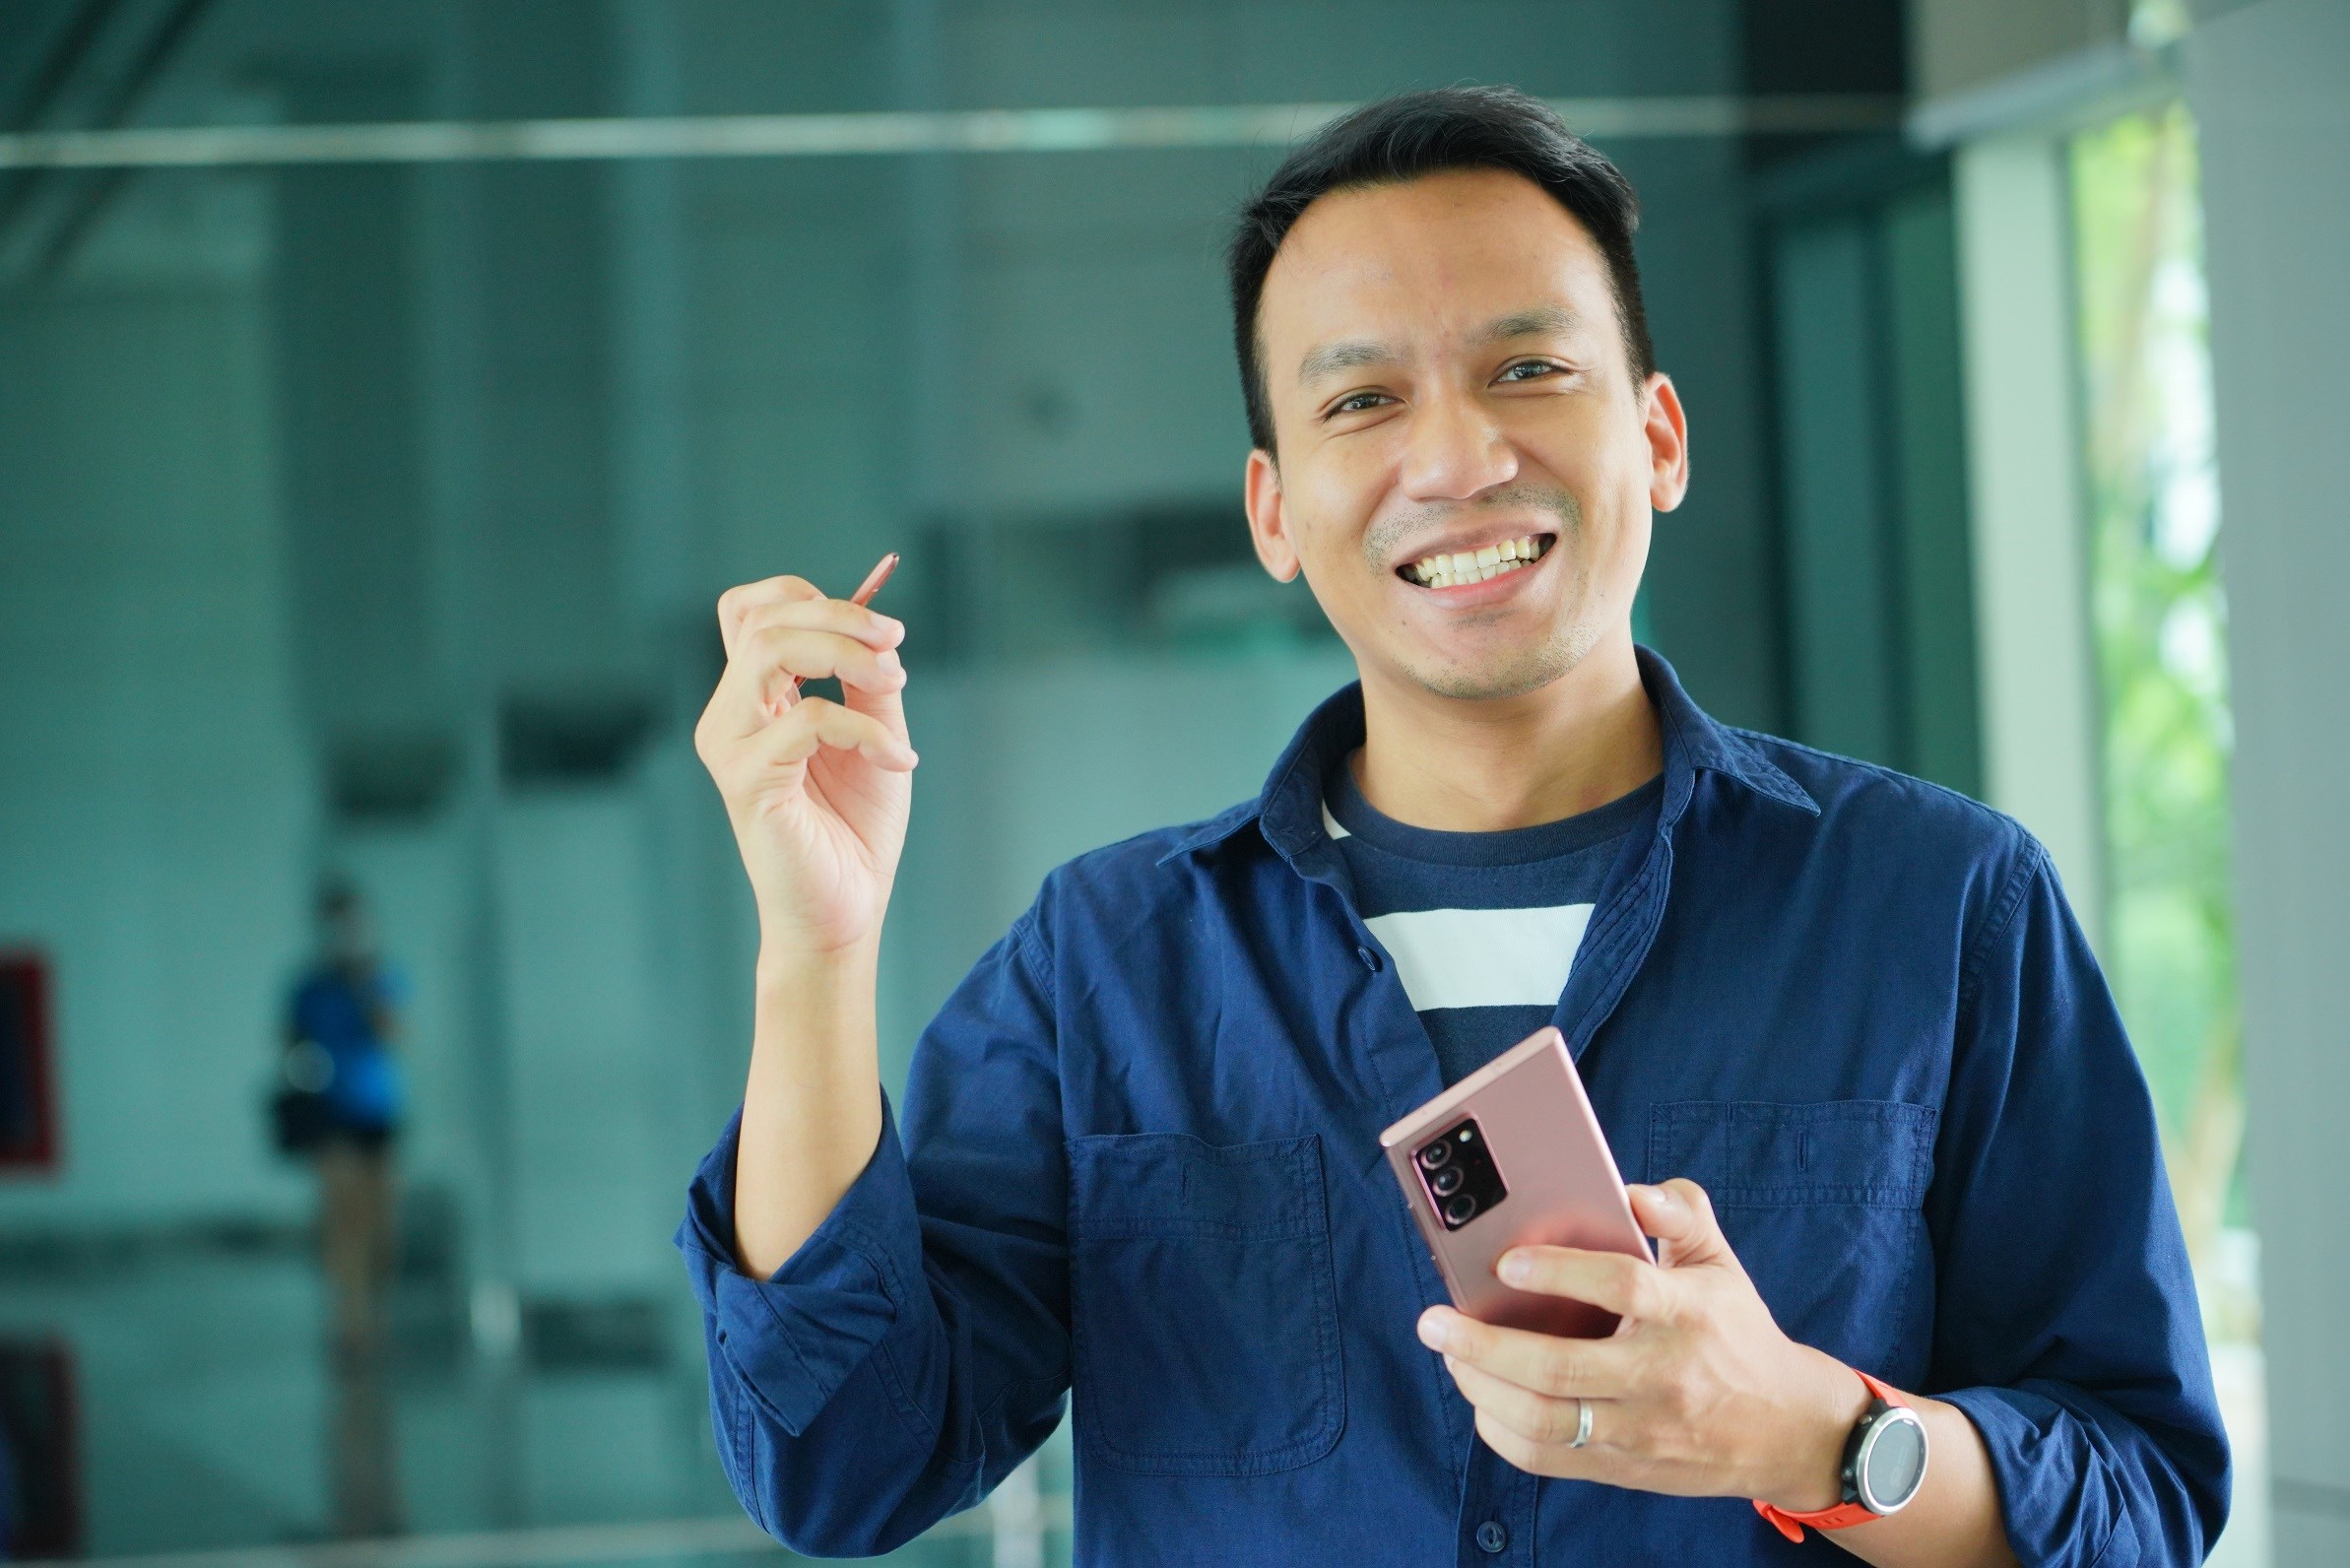 โน้ตแฟนโดนใจ! ยกให้ S Pen คือฟีเจอร์ที่ใช่ เผยโฉมคนกลุ่มแรกของไทยที่ได้เป็นเจ้าของซัมซุง Galaxy Note20